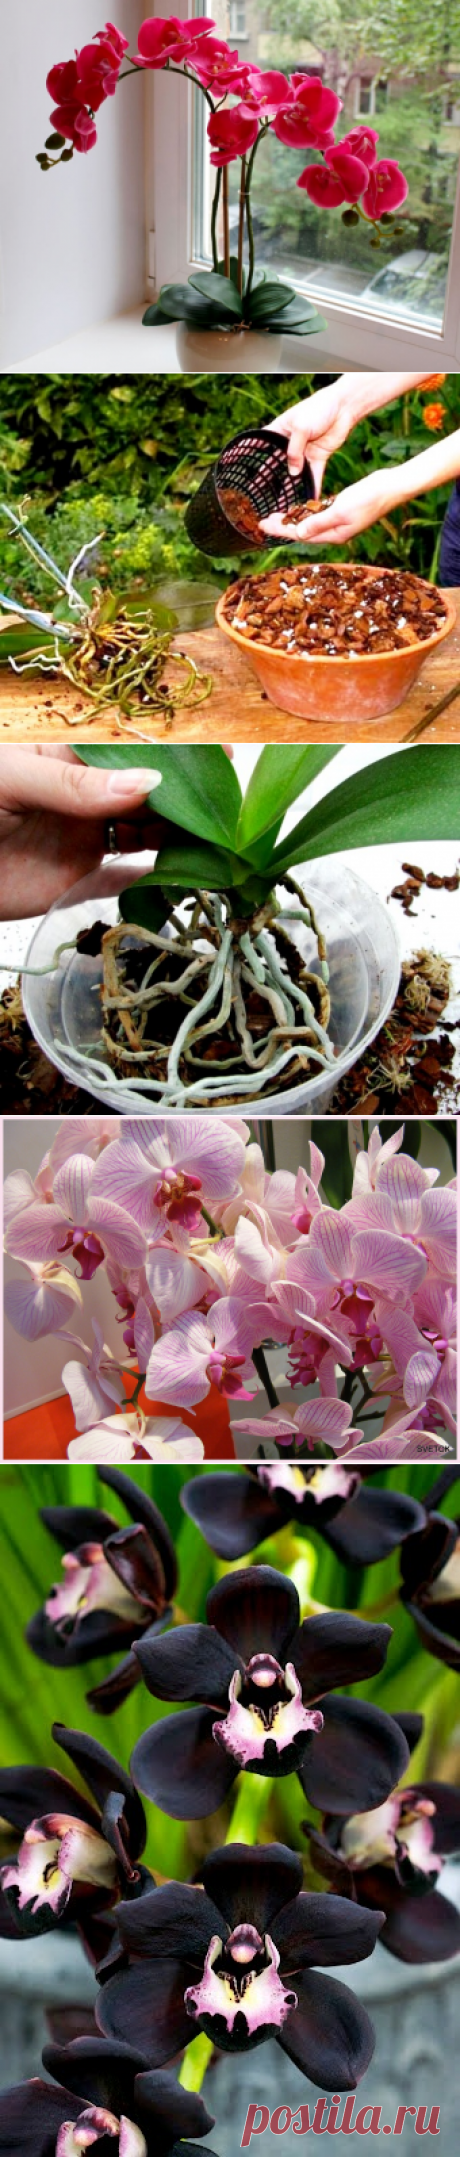 Сроки пересадки орхидеи после покупки